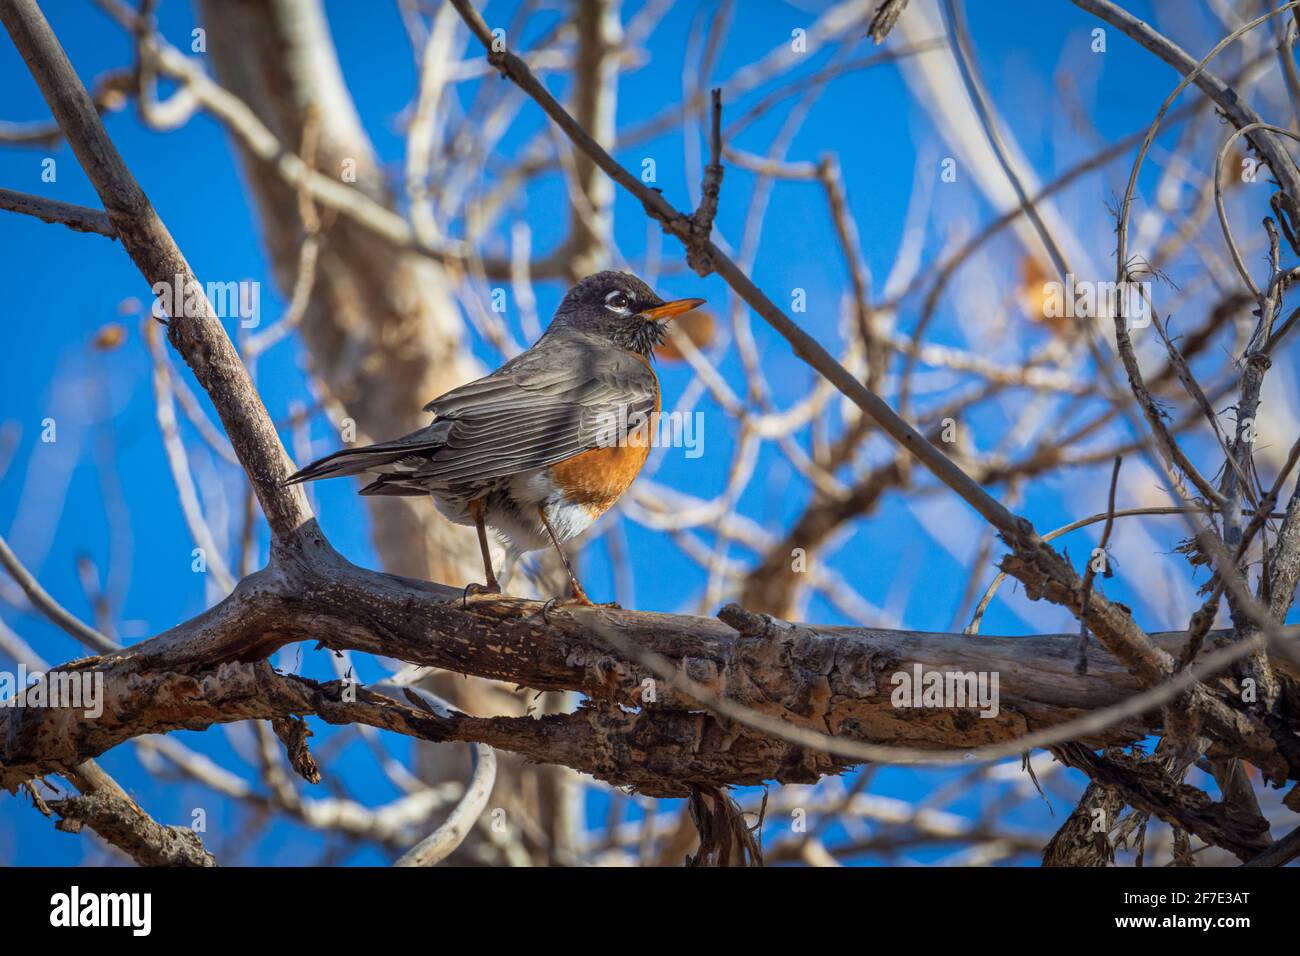 Giovane Robin americano (Turdus migratorius) in cottonwood albero in primavera, Castle Rock Colorado USA. Foto scattata a marzo. Foto Stock